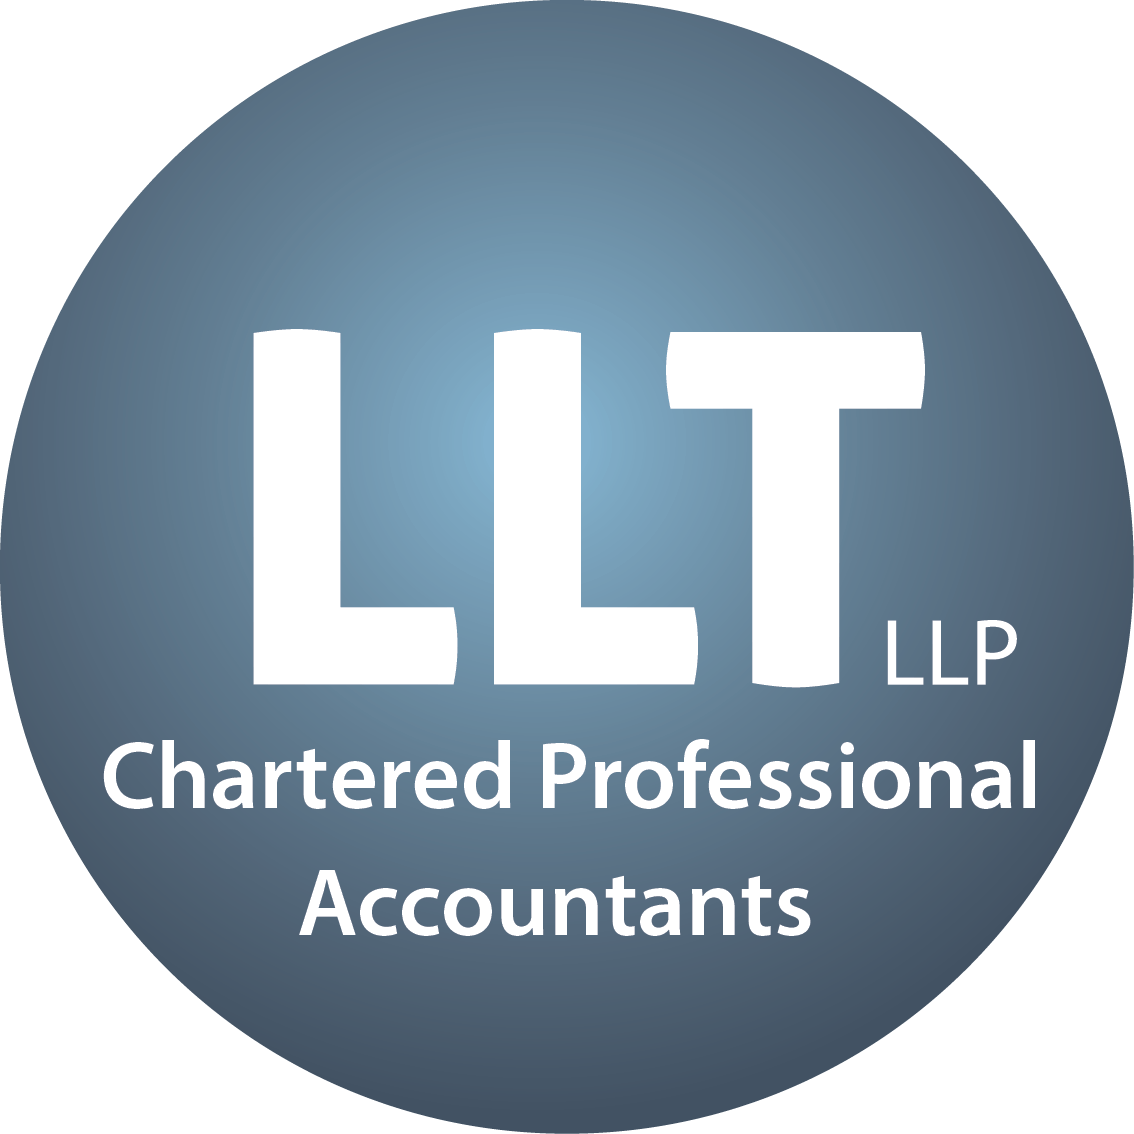 LLT LLP Chartered Professional Accountants logo